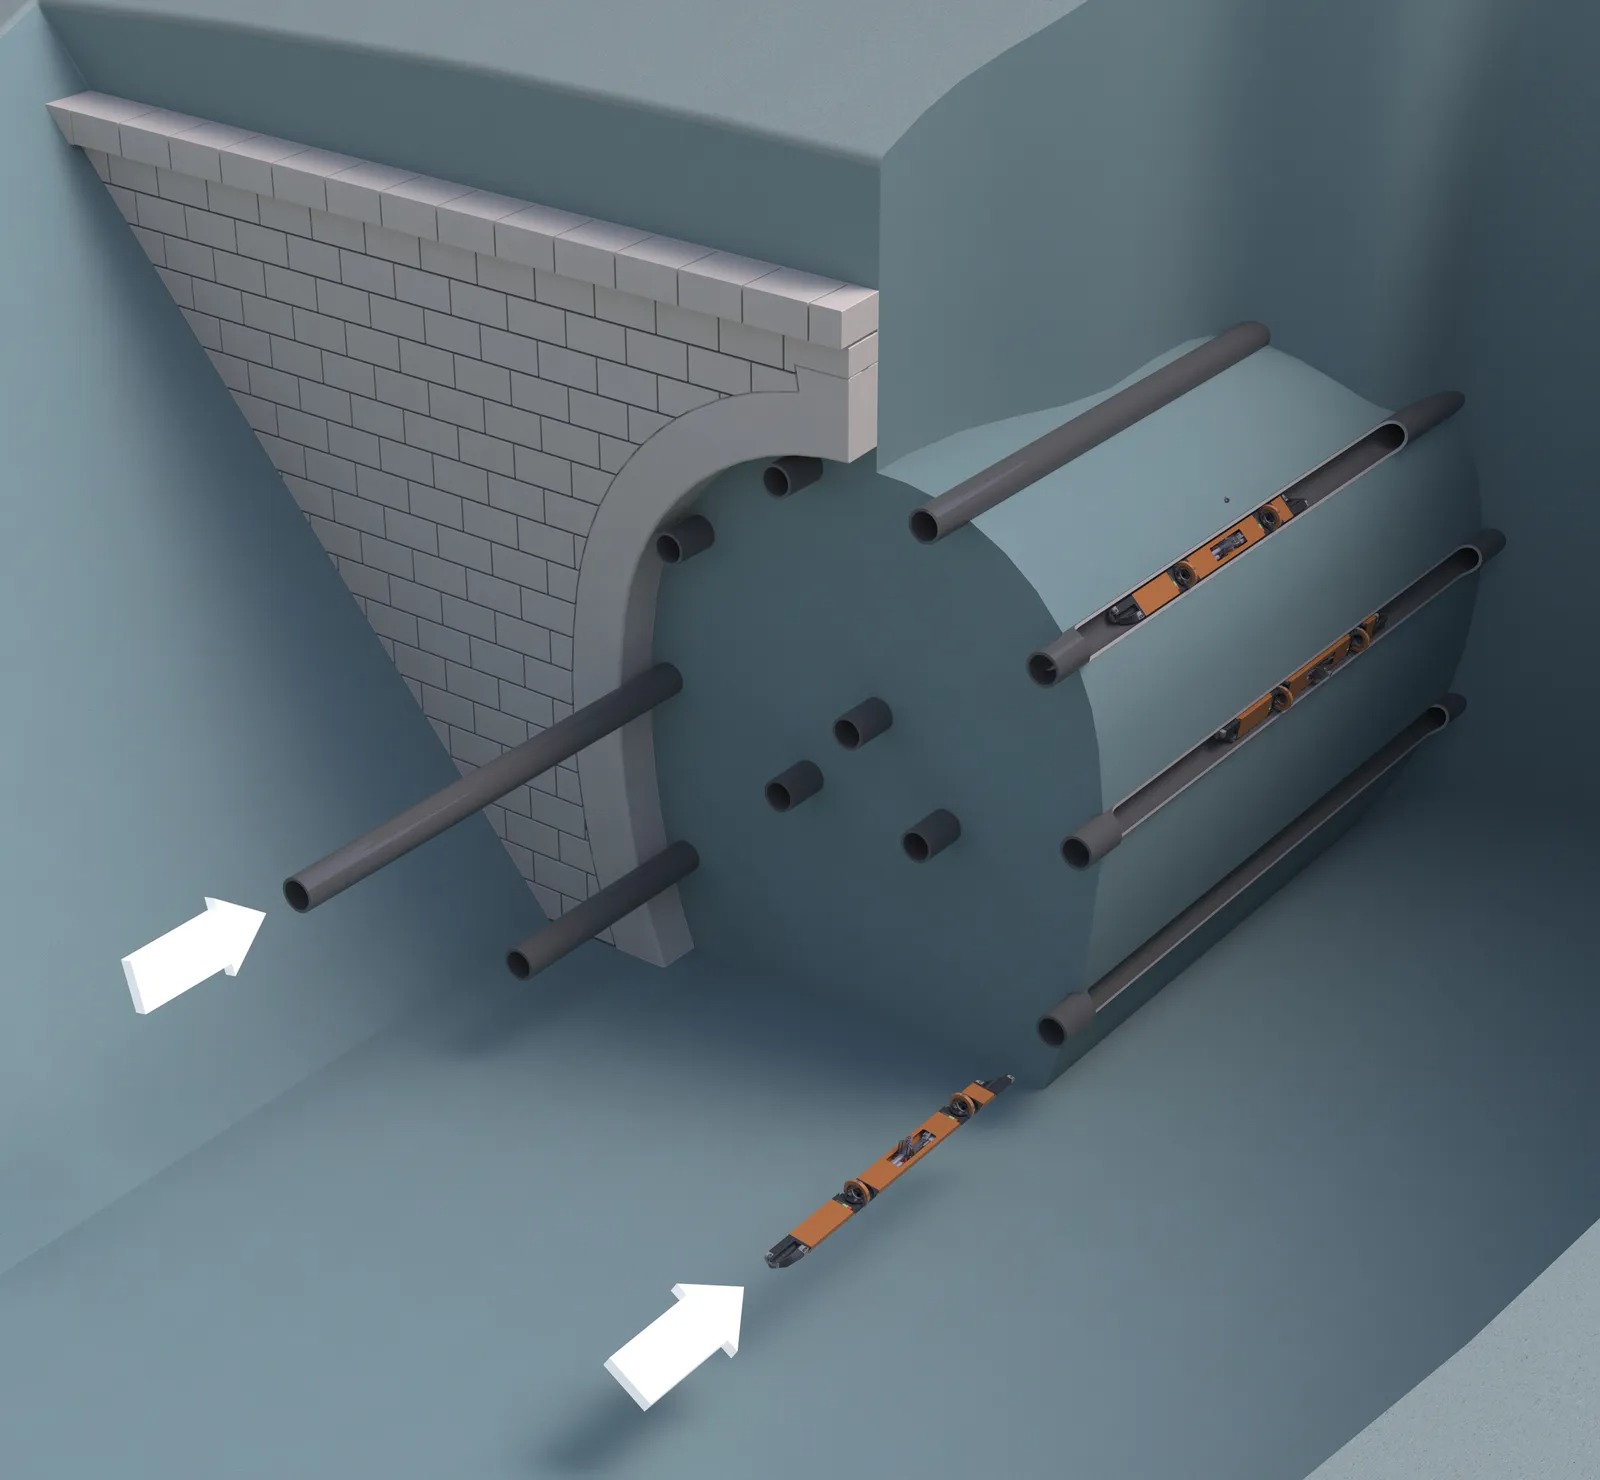 Không phải máy khoan khổng lồ, đường hầm của tương lai có thể được tạo ra bởi những bầy robot nhỏ - Ảnh 2.